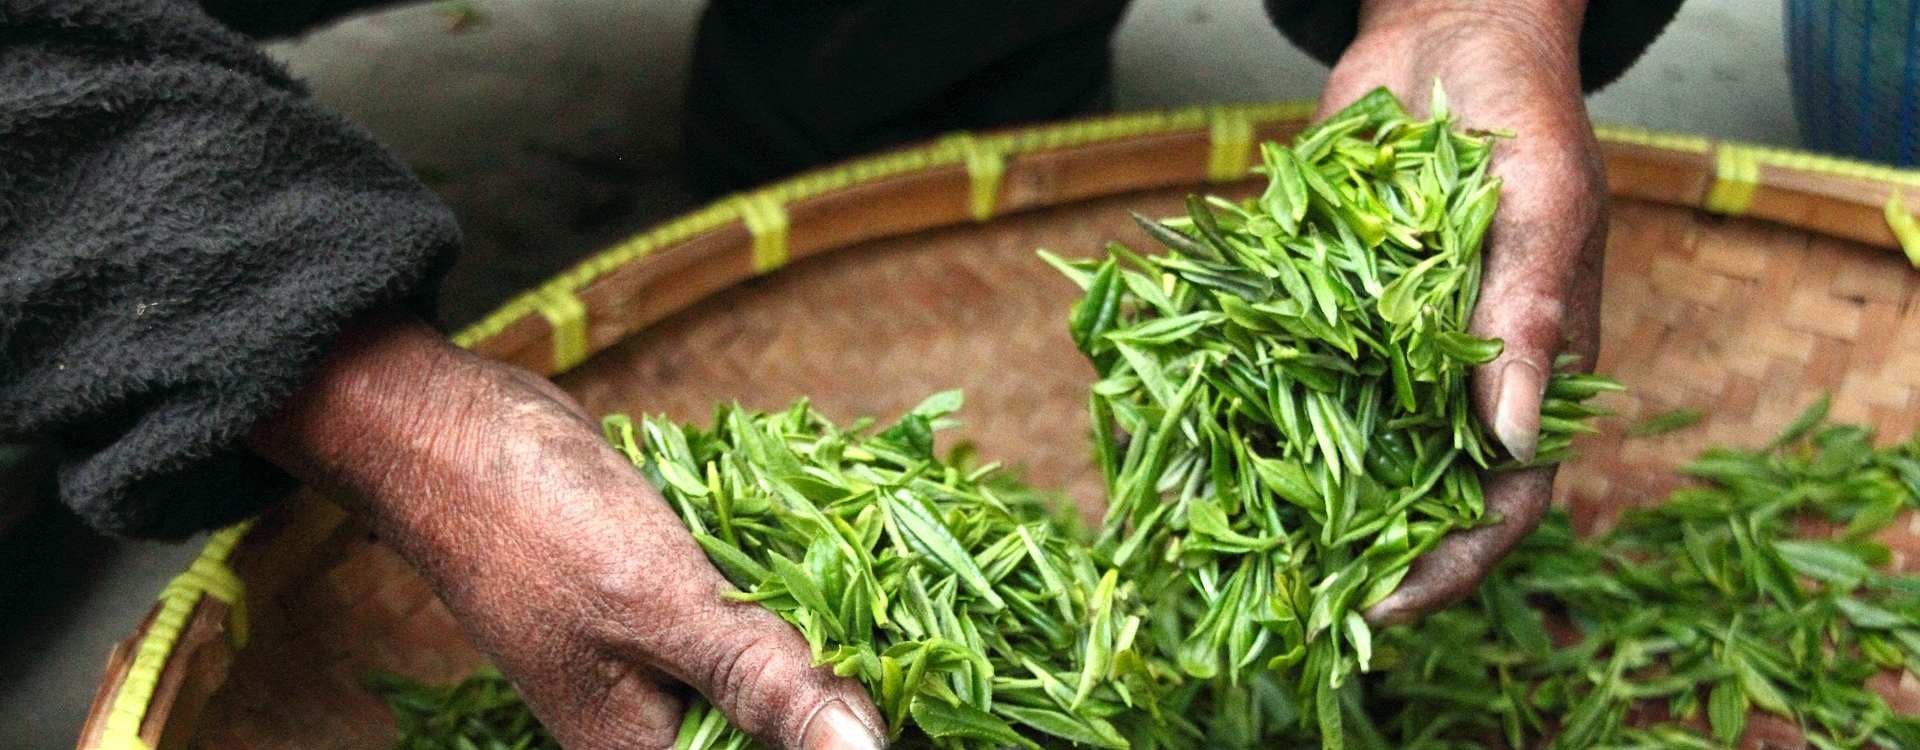 Camellia sinensis. Beneficios propiedades, usos y cultivo | CafeTeArteBlog  - CaféTéArte